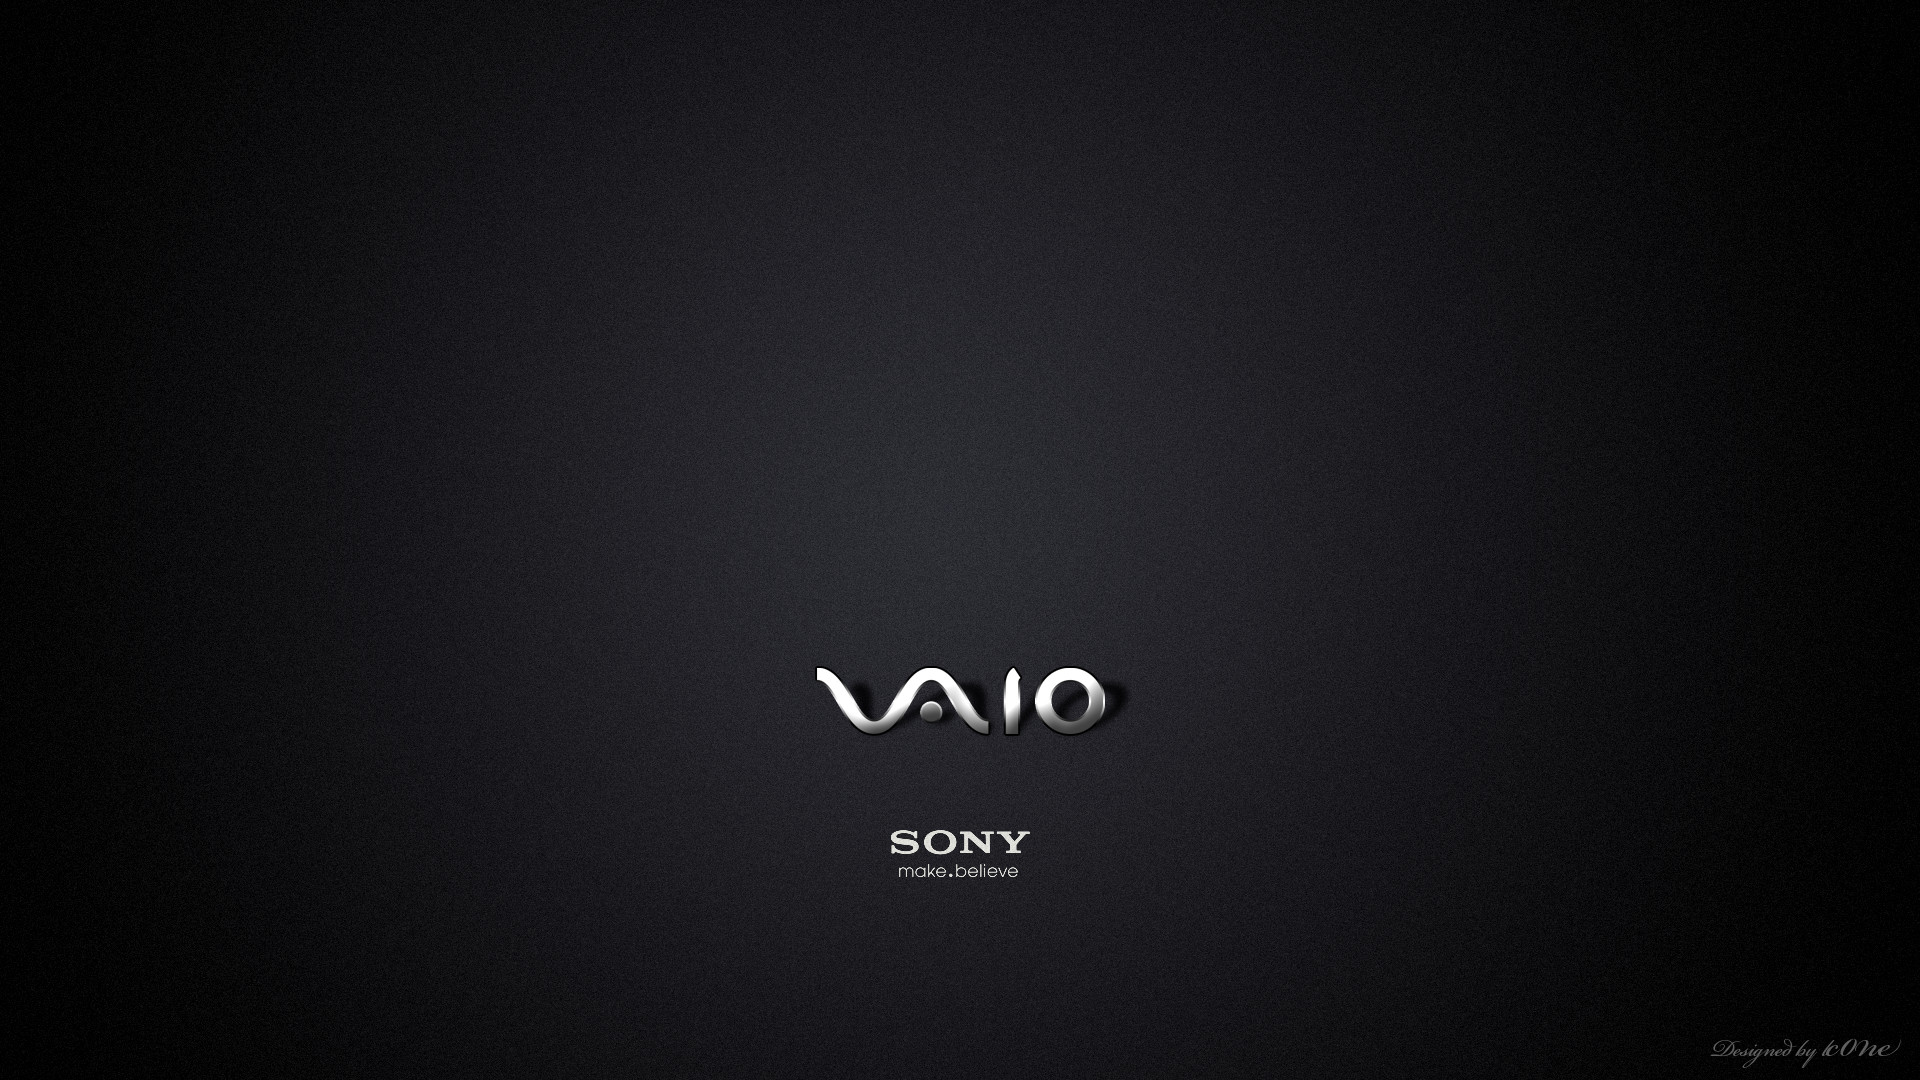 Sony VAIO 1080